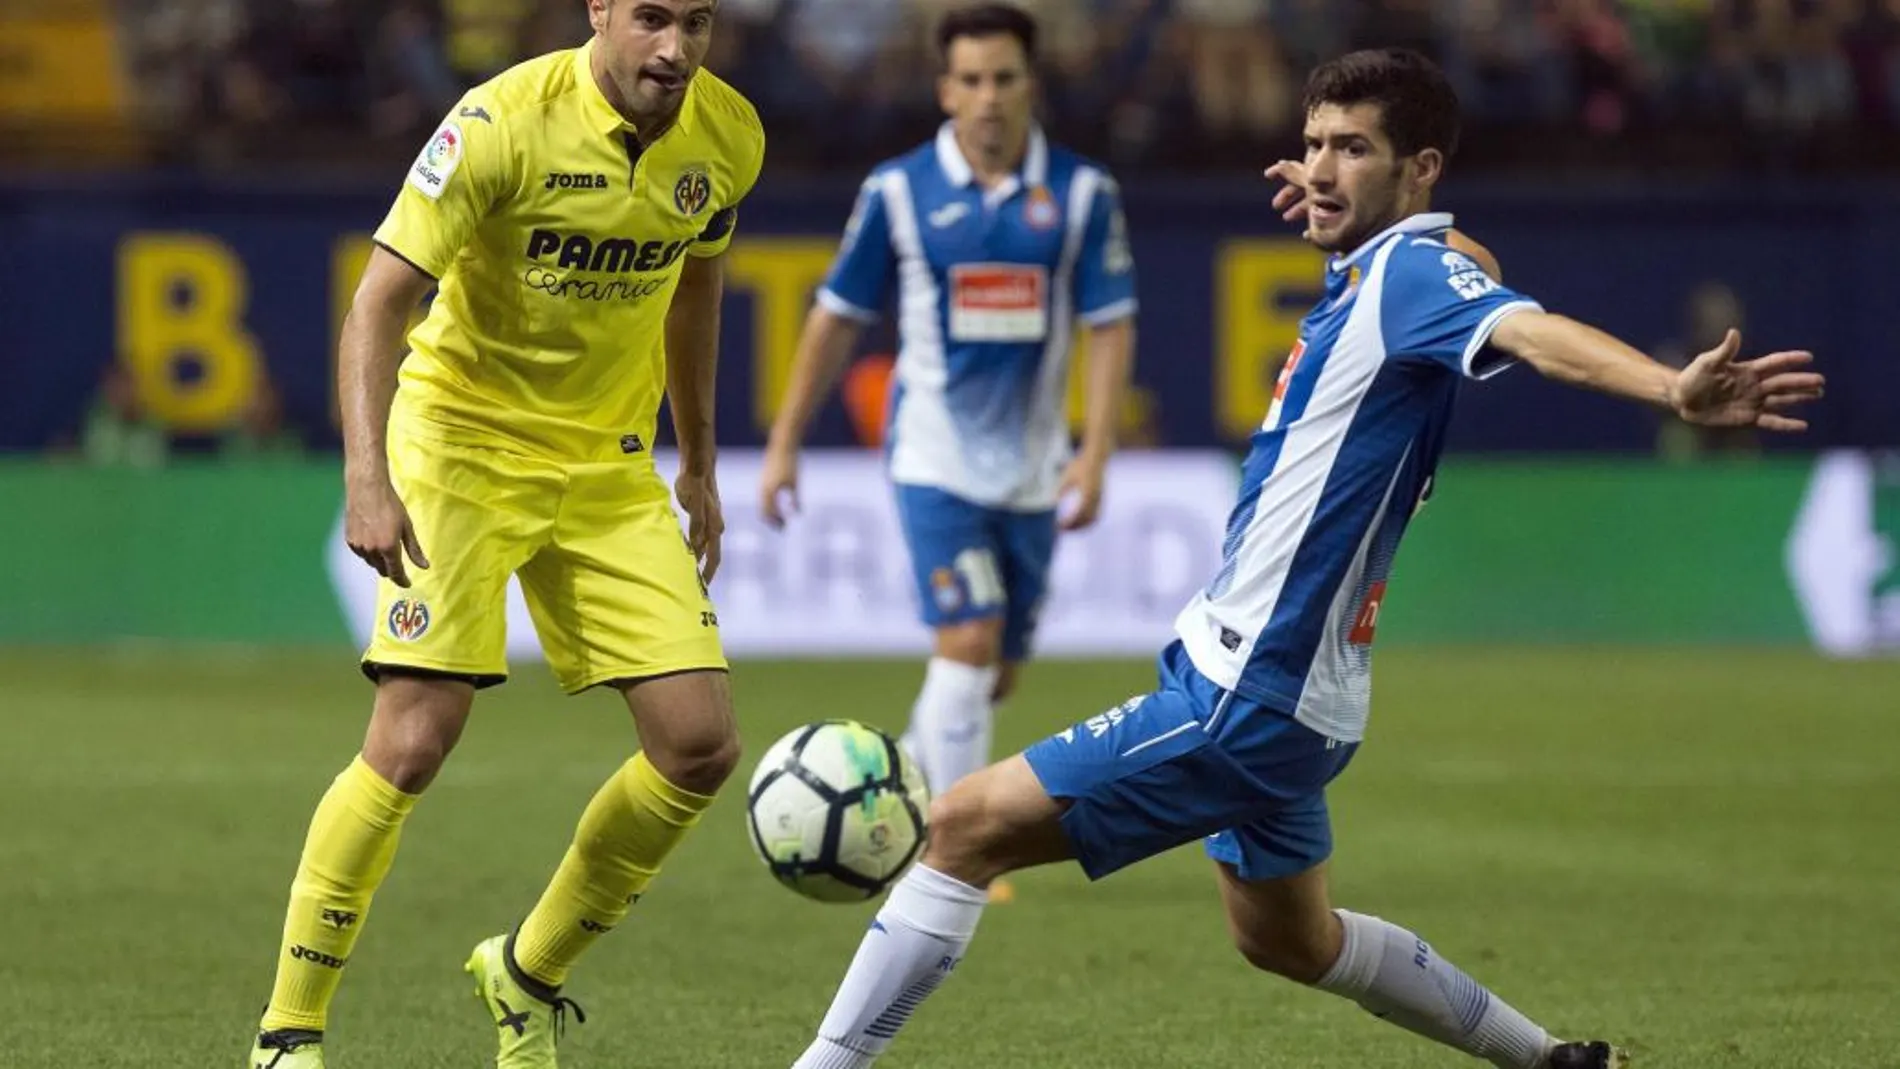 El defensa del Espanyol Aaron Martin pelea un balón con el defensa del Villarreal Mario en partido de la sexta jornada de liga en Primera División